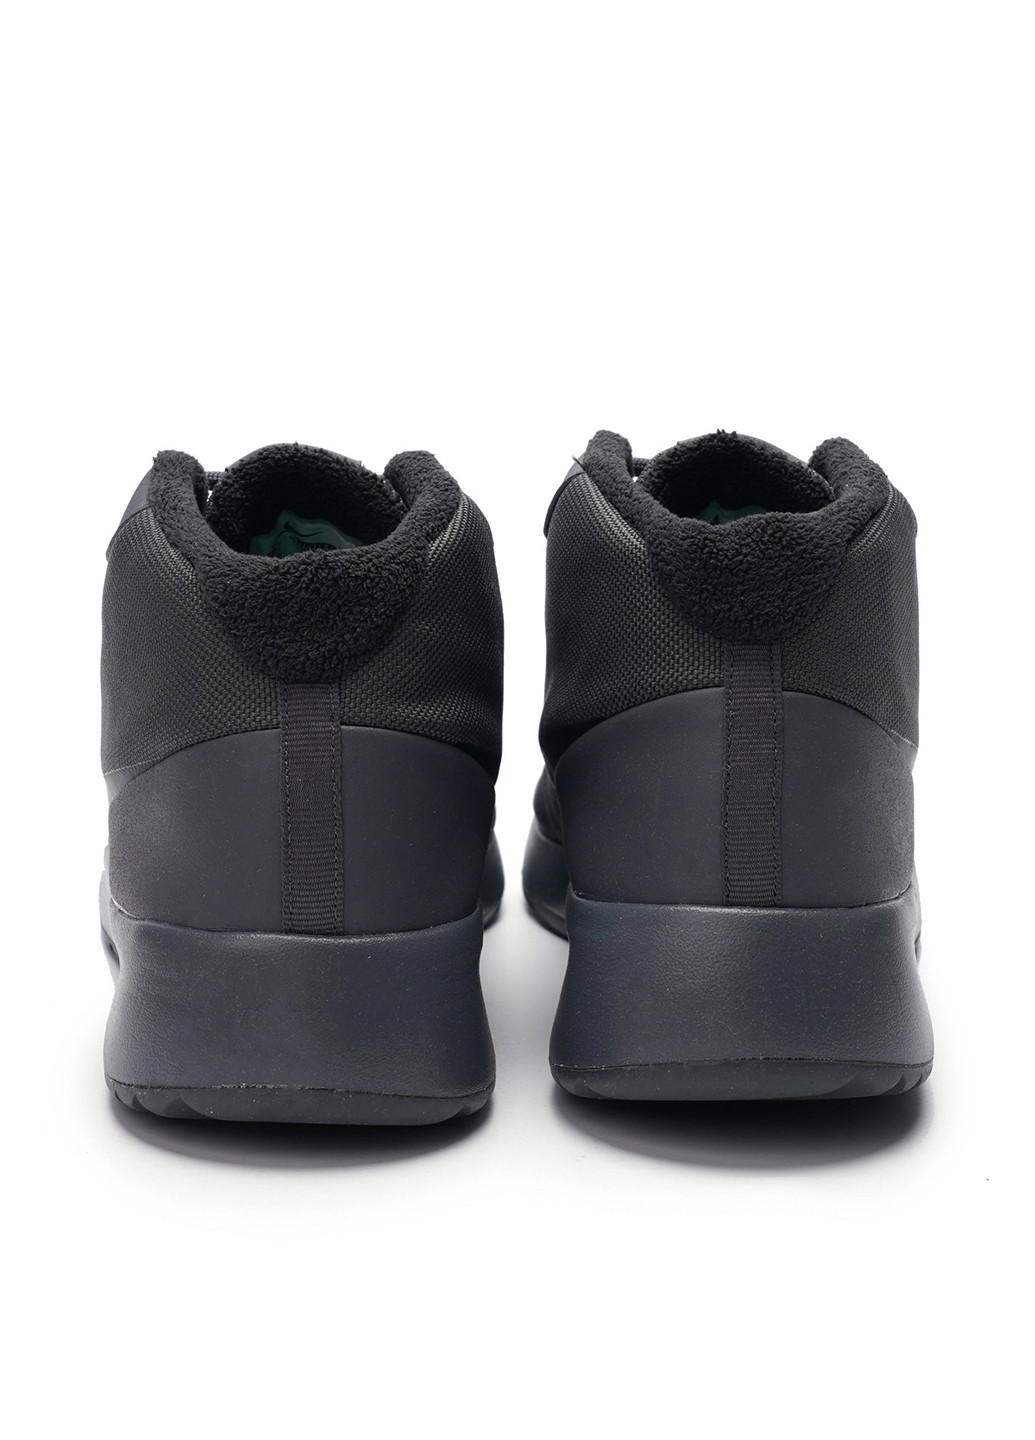 Черные демисезонные кроссовки Nike Men's Tanjun Chukka Shoe